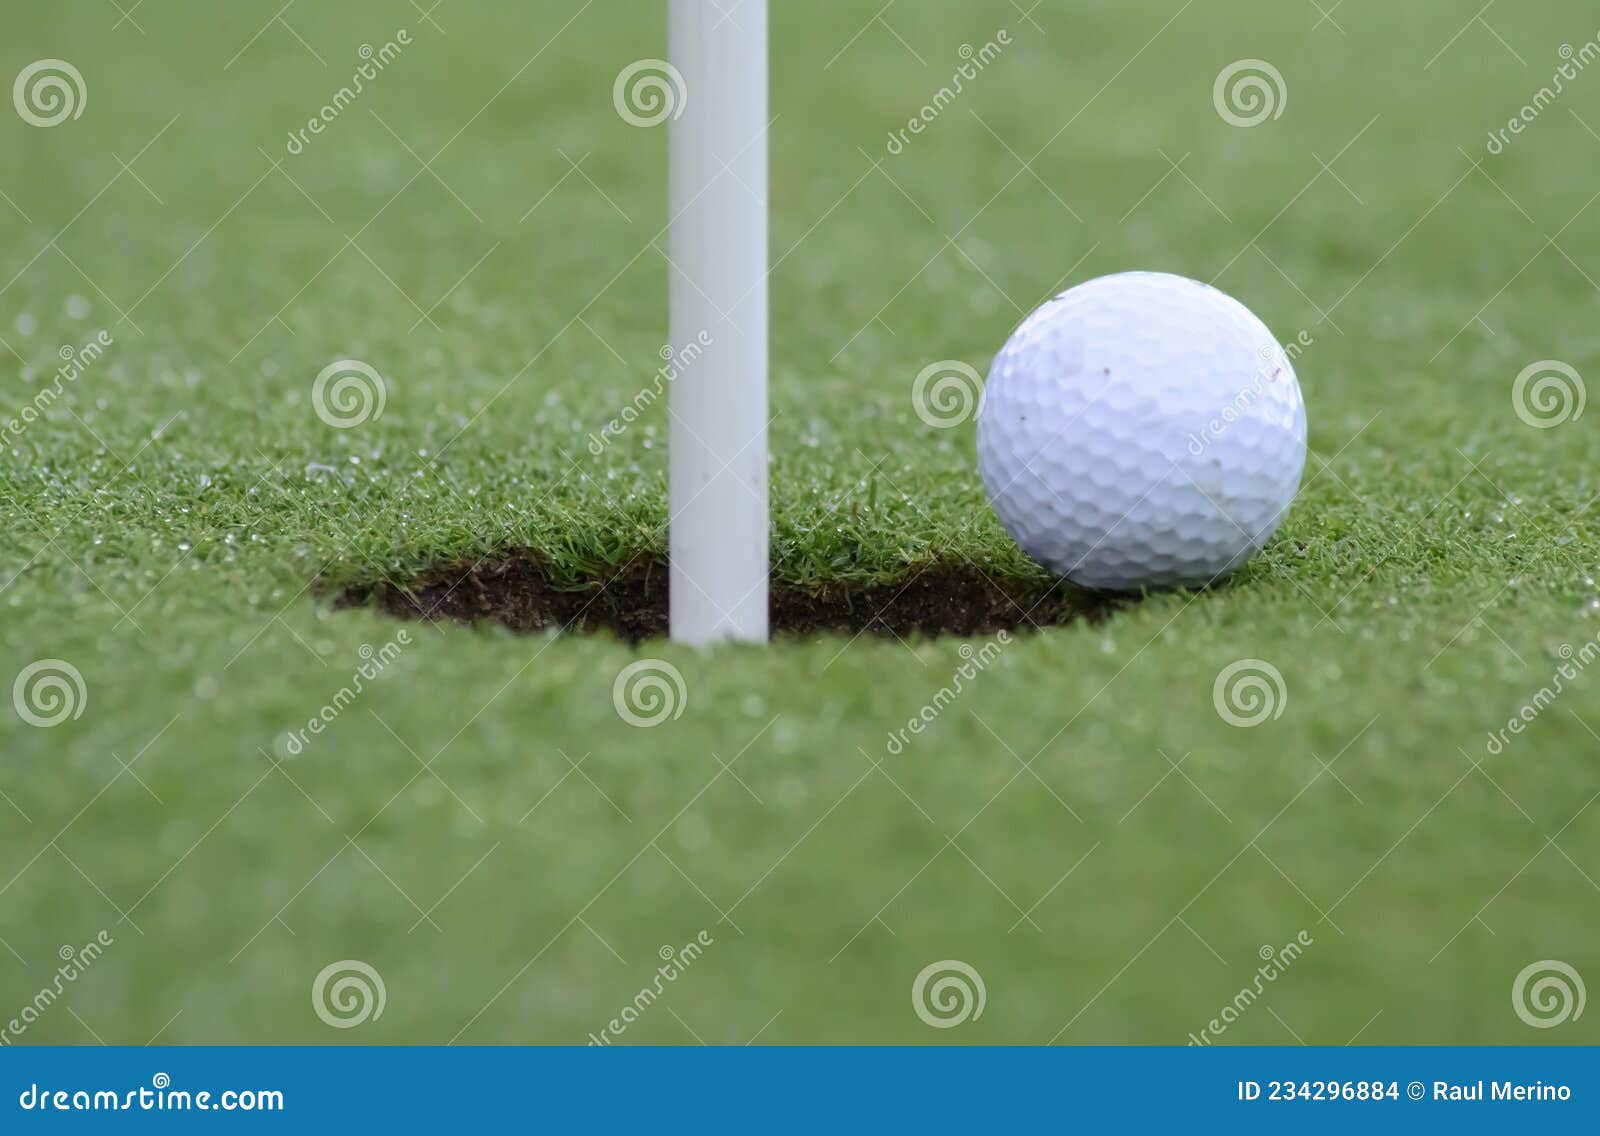 pelota de golf apunto de caer al hoyo